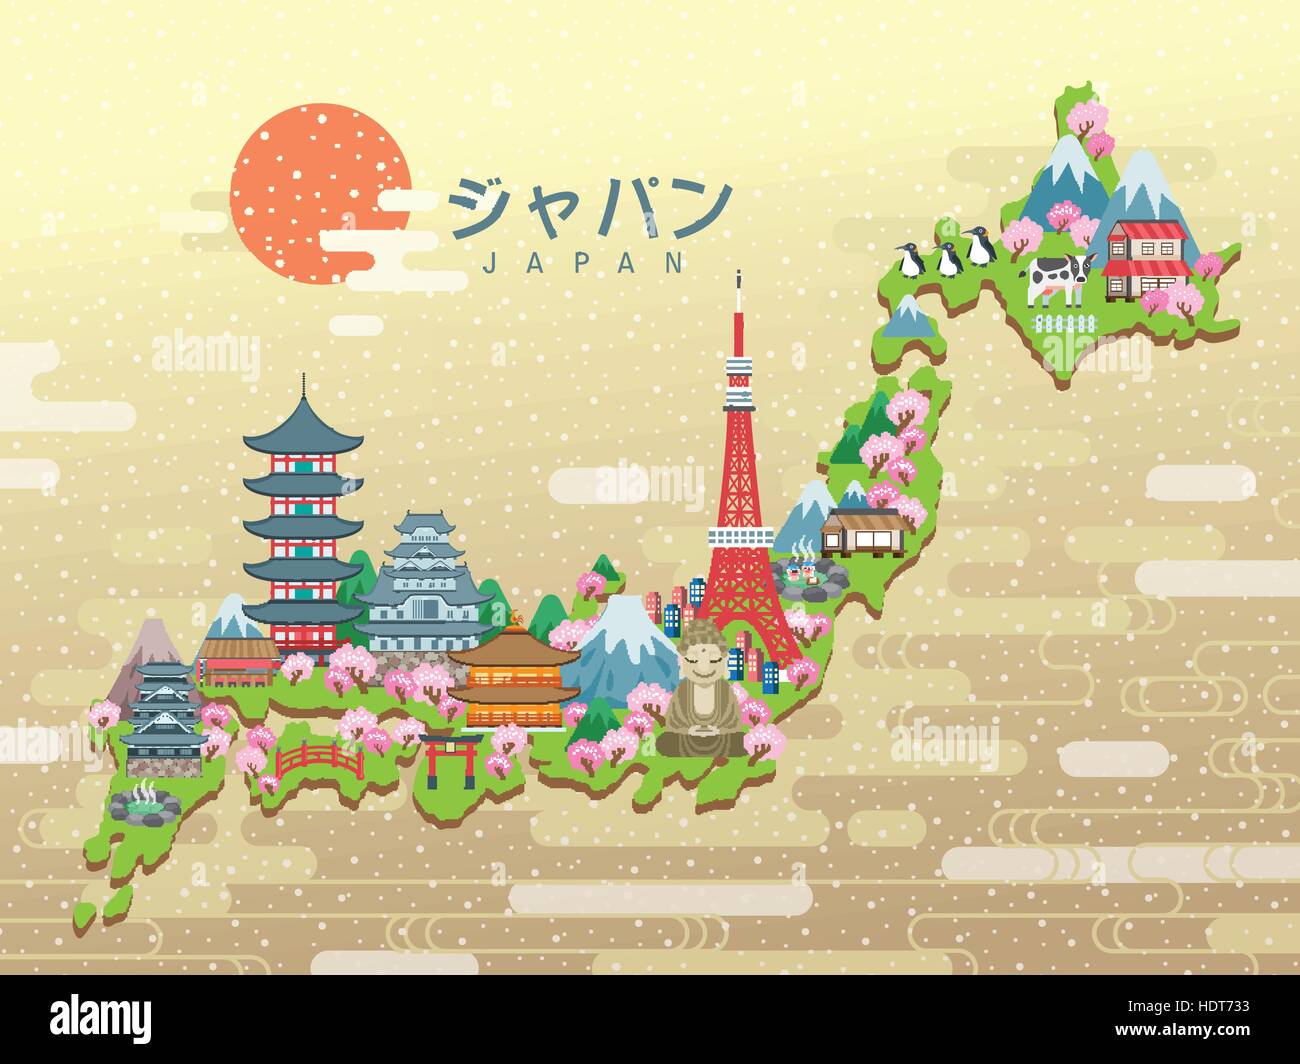 schöne Japan Reise-Karte - Japan in japanischen Wörtern in der Mitte Stock Vektor